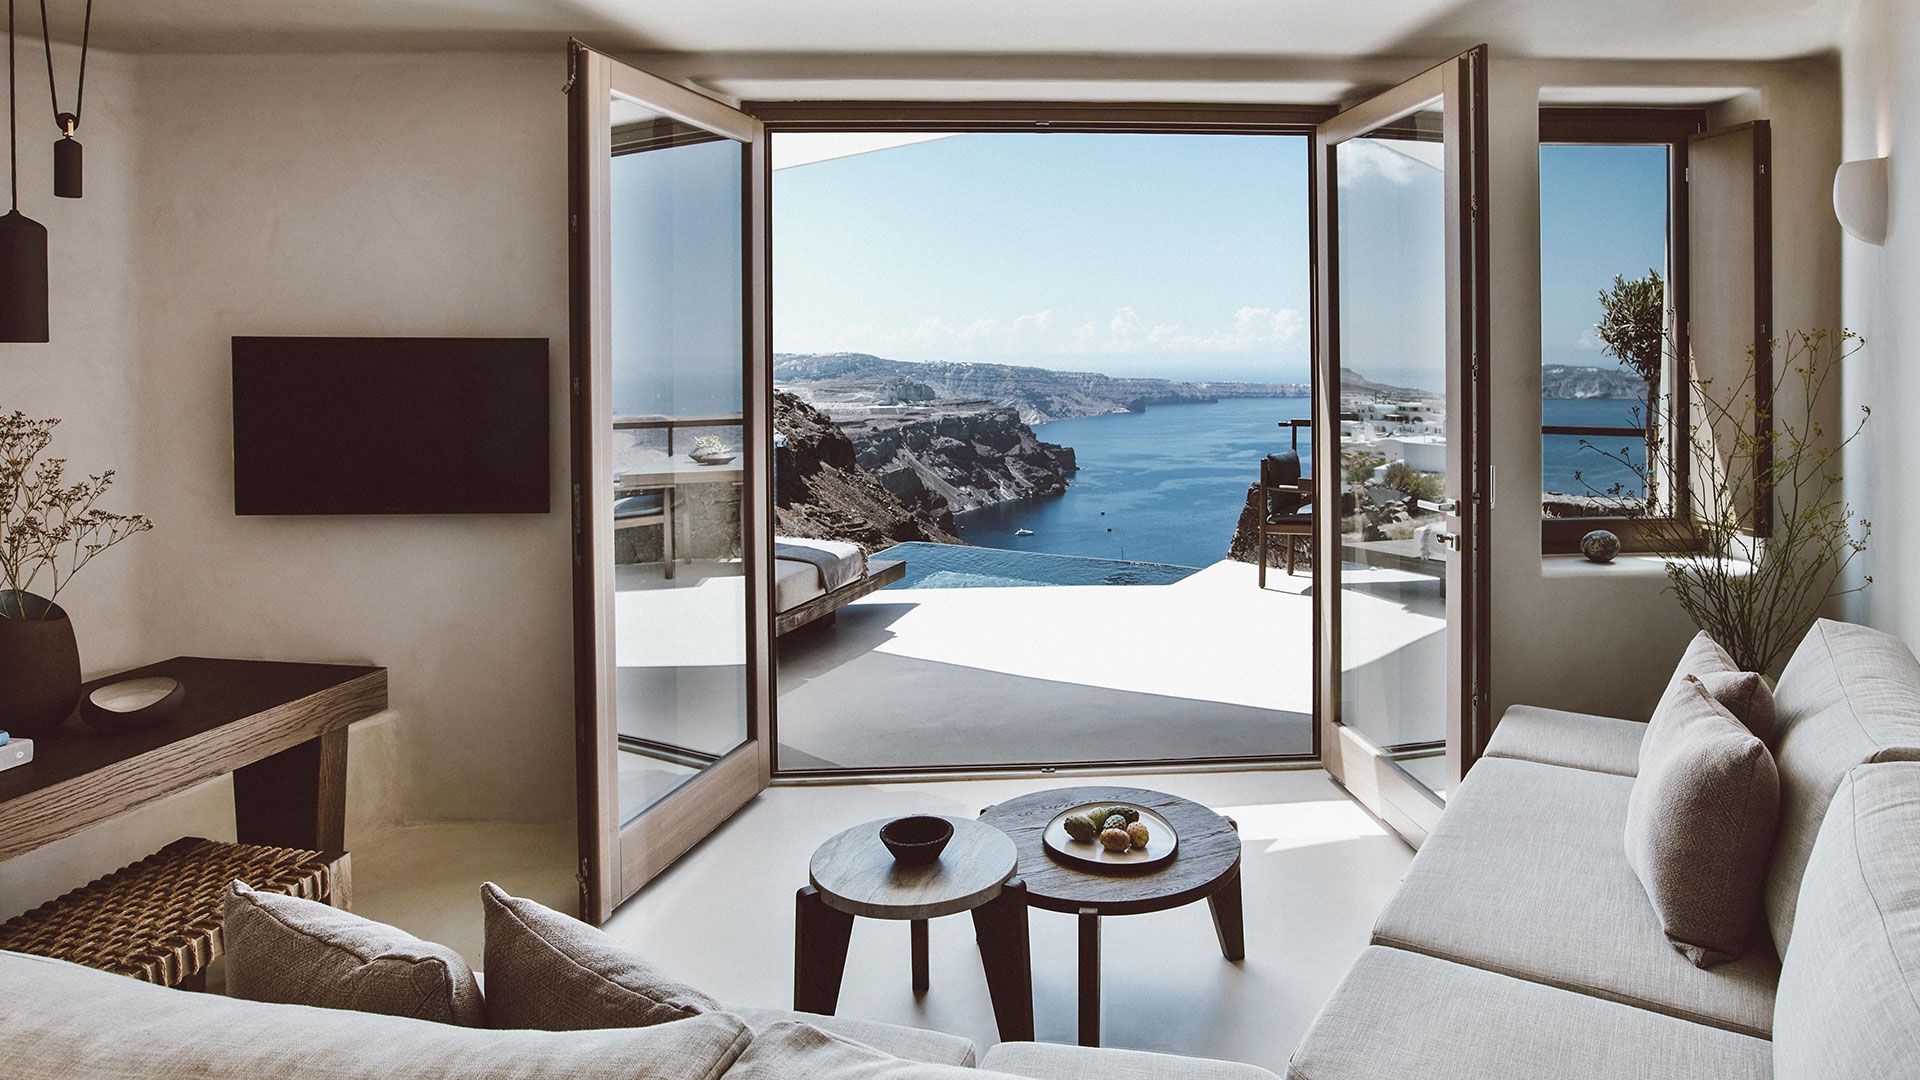 Construction of 3 Luxury Private Villas, Imerovigli, Santorini